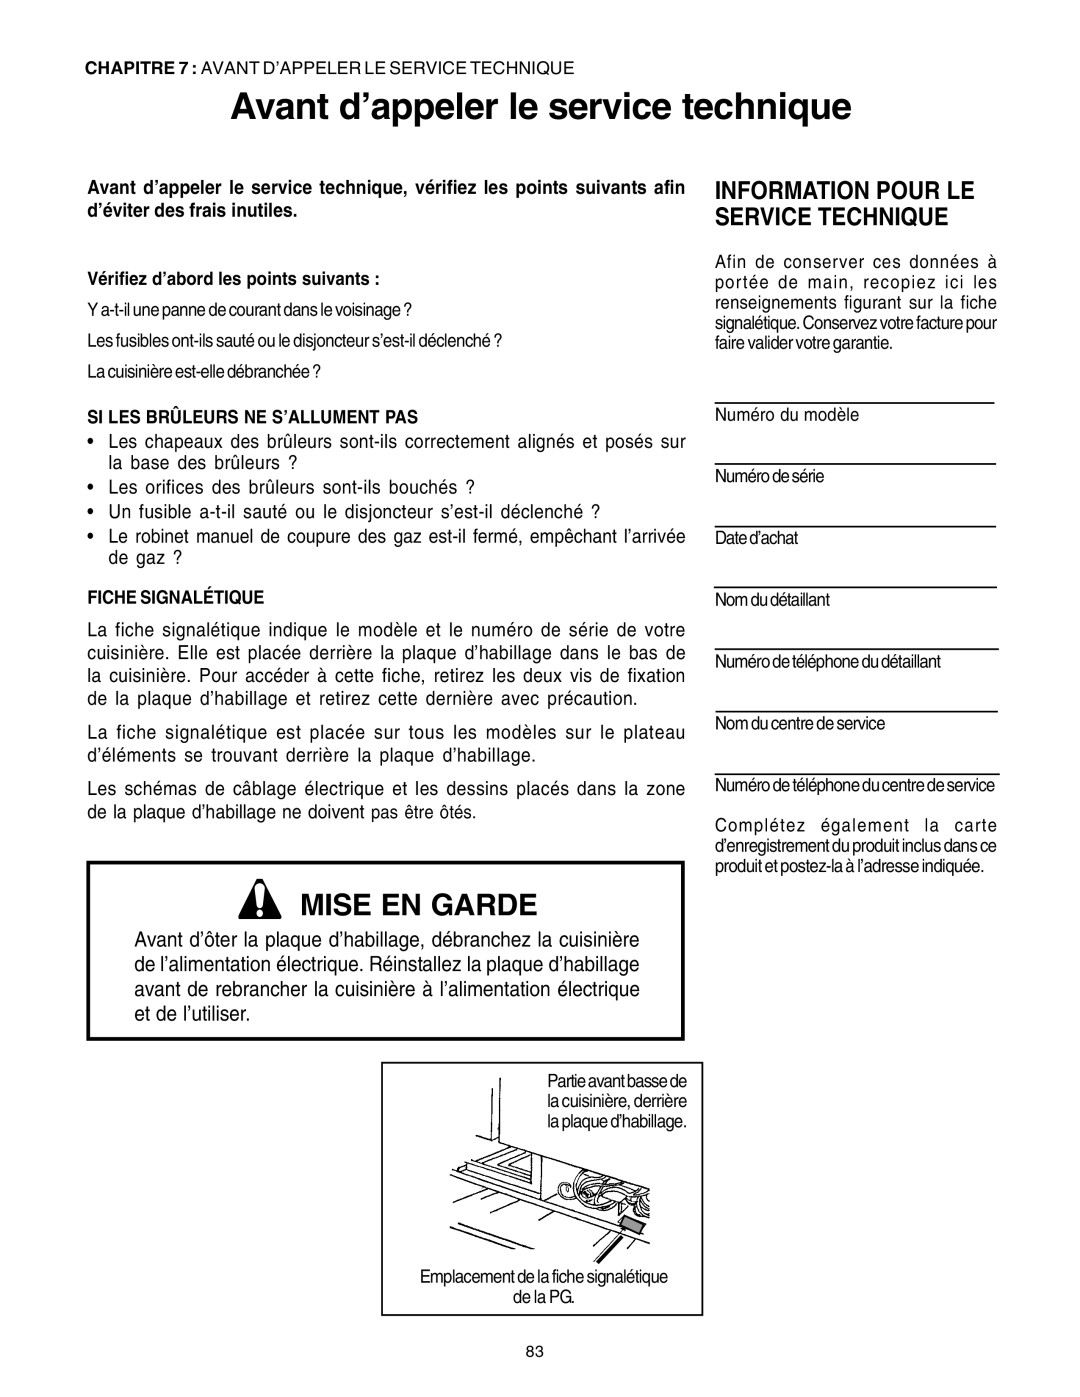 Thermador PRG36, PRG30 manual Avant d’appeler le service technique, Information Pour Le Service Technique, Mise En Garde 